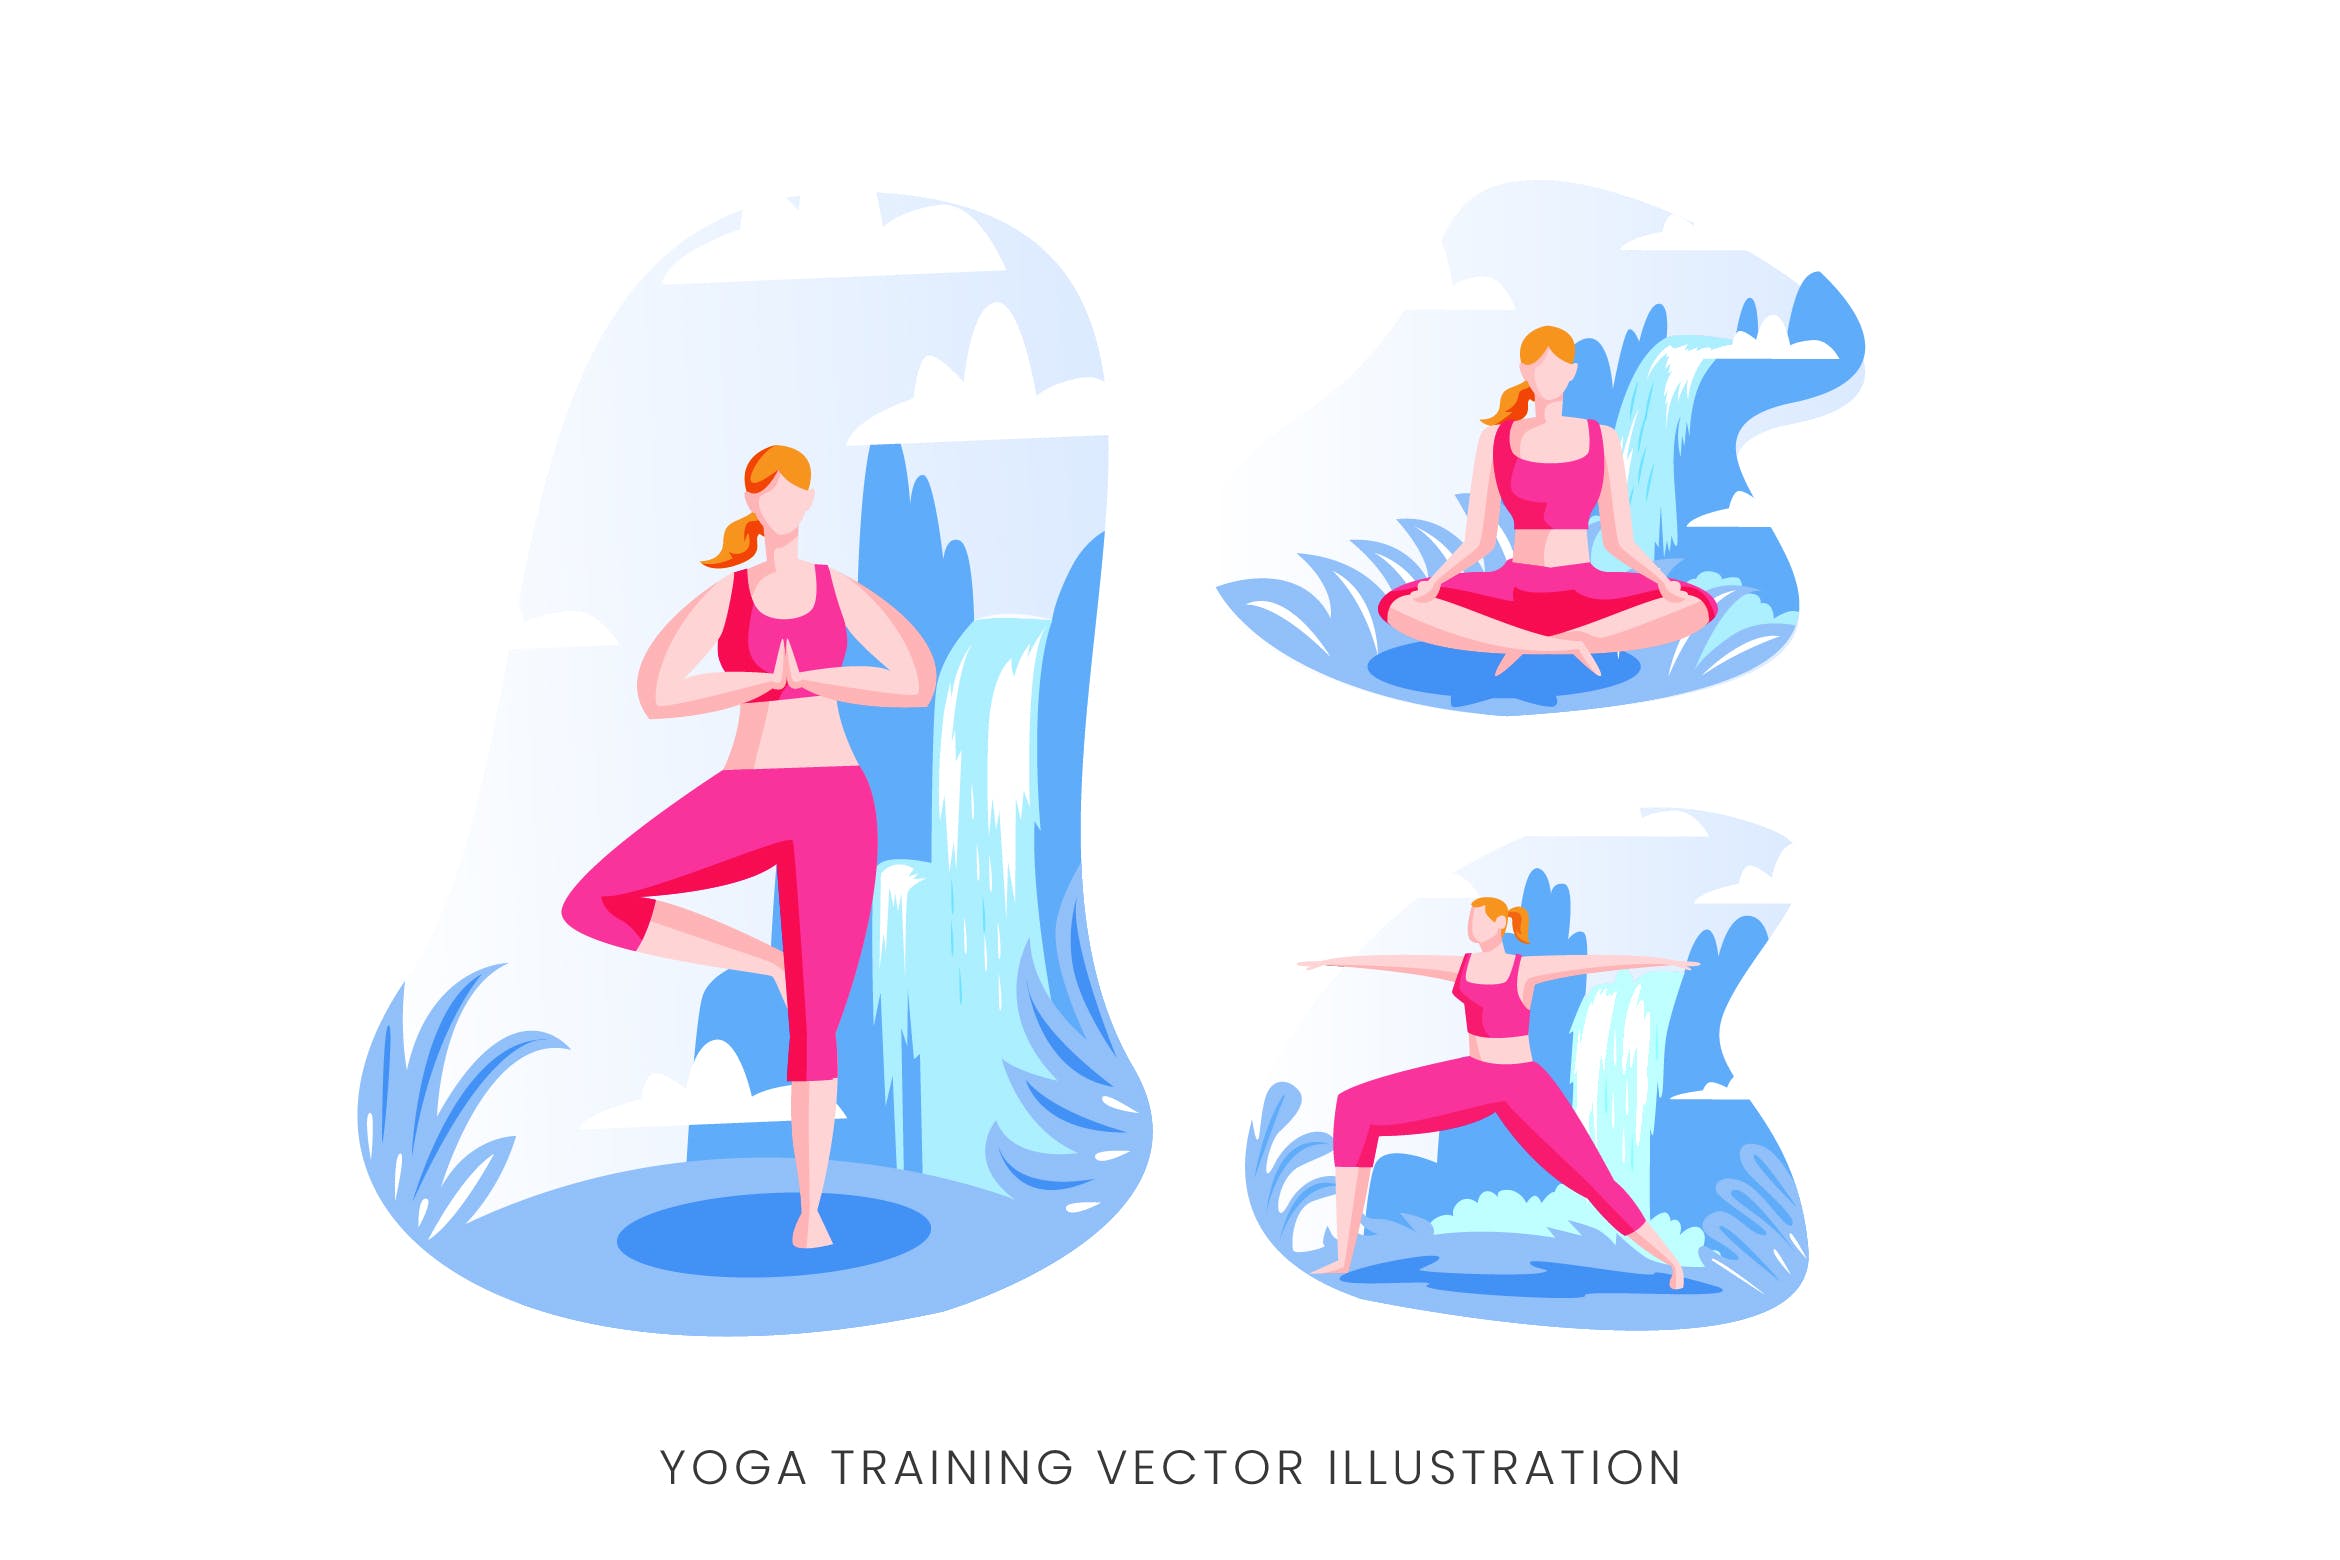 瑜伽训练人物形象矢量手绘素材中国精选设计素材 Yoga Training Vector Character Set插图